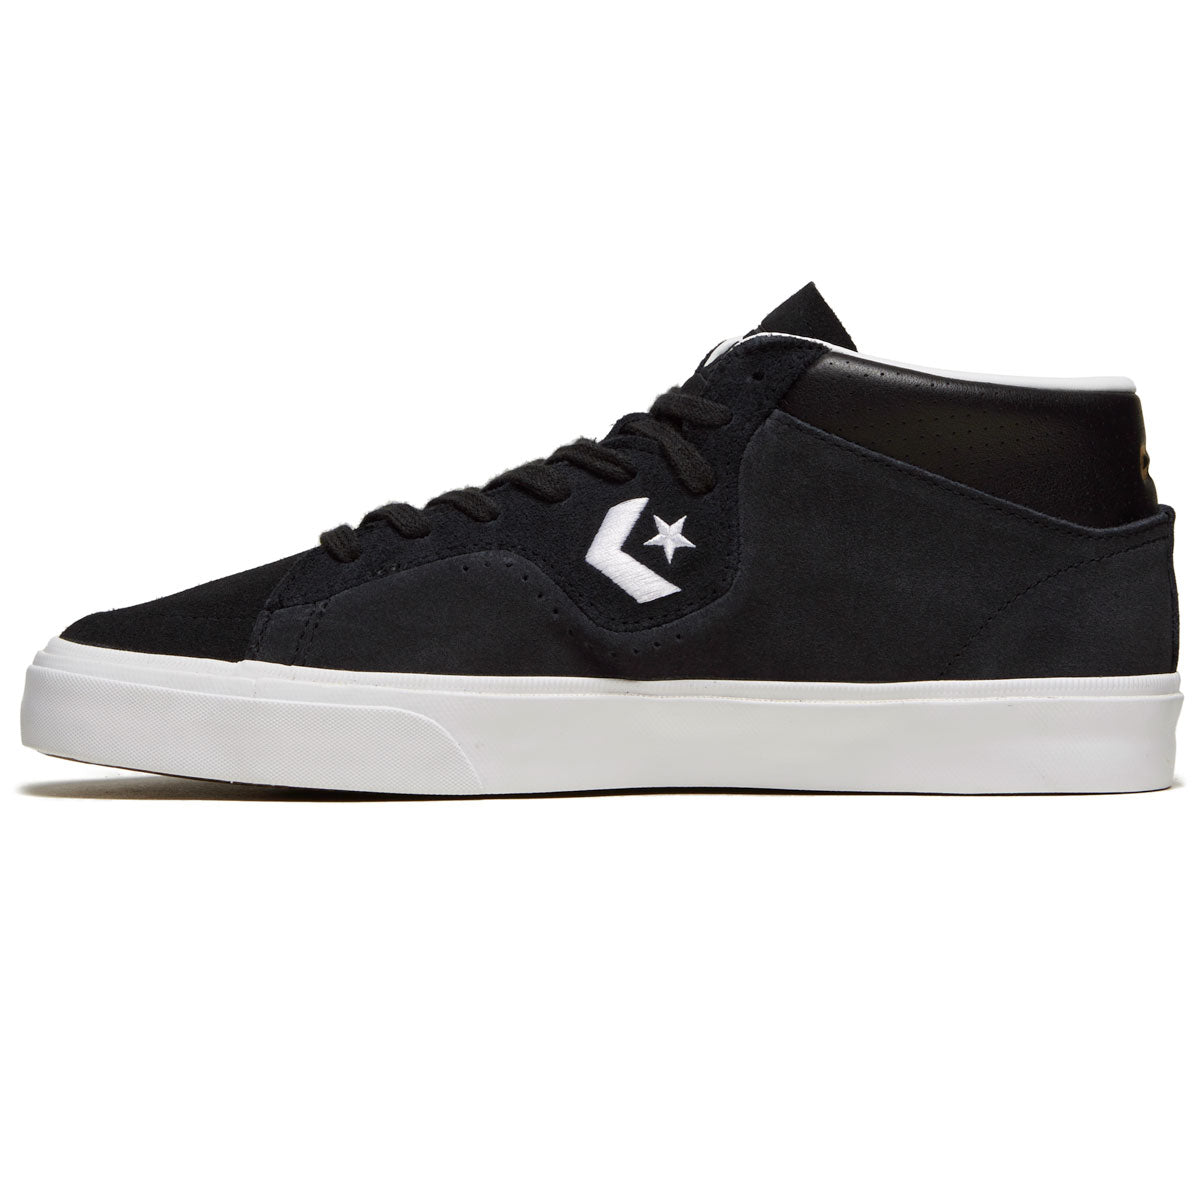 Converse Louie Lopez Pro Mid Shoes - Black/Black/White image 2